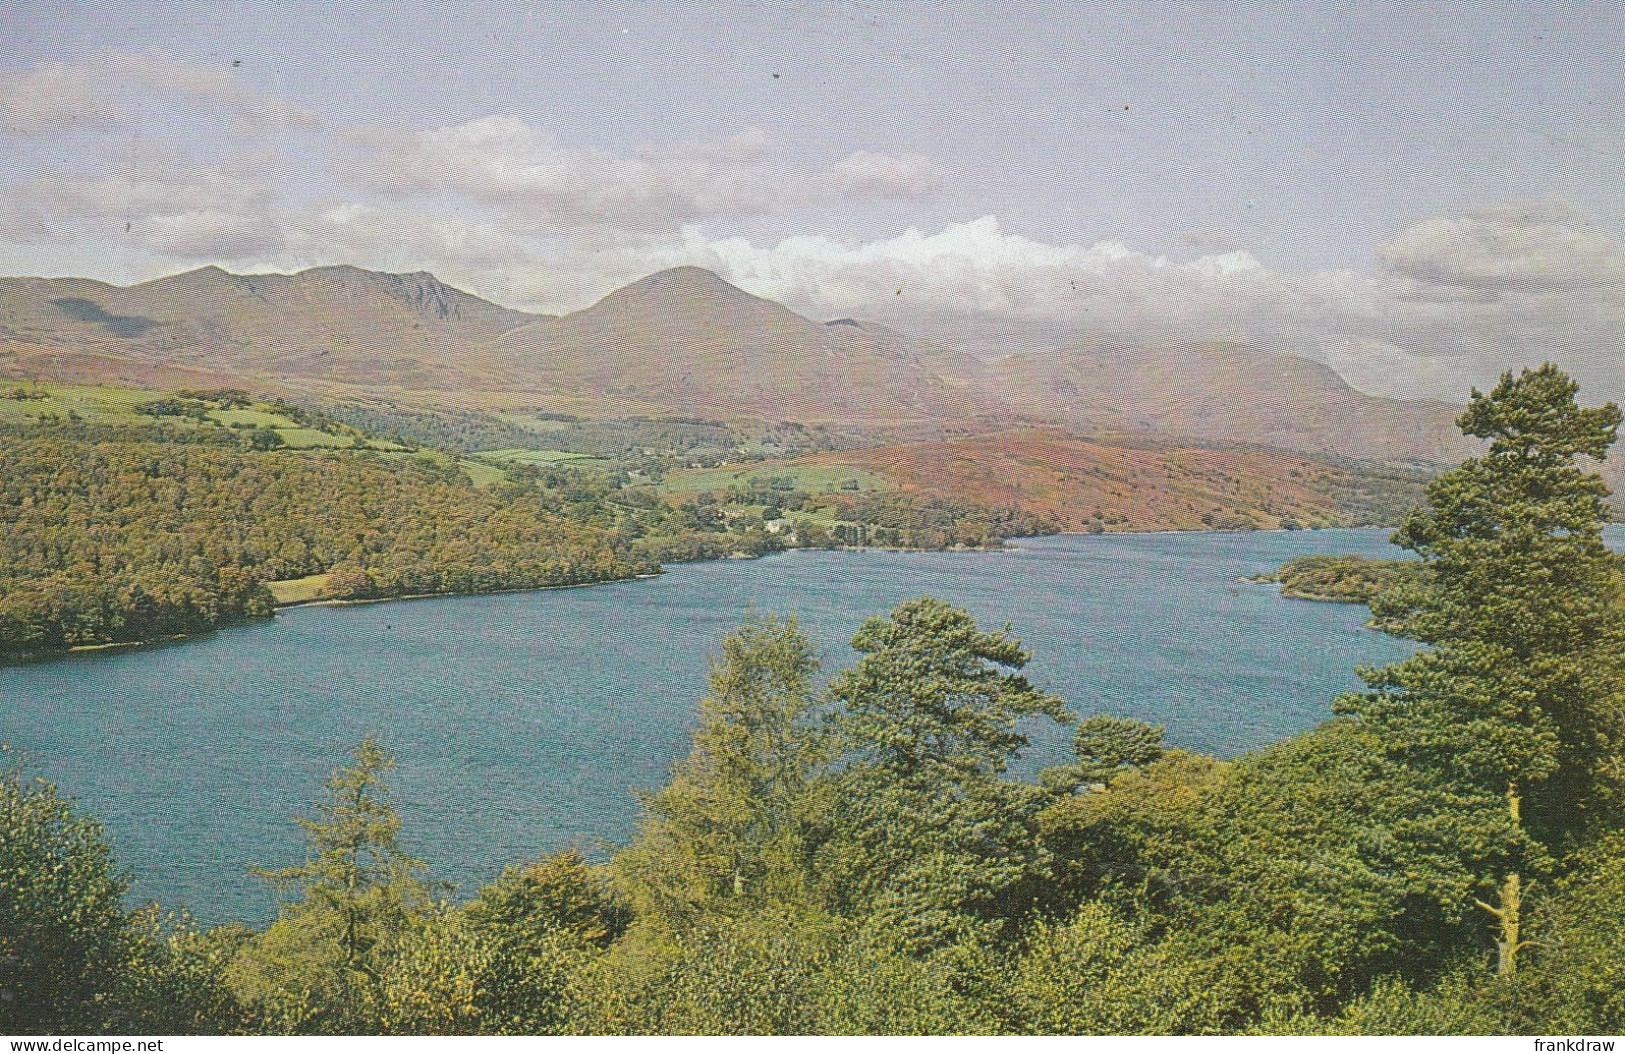 Postcard - The Weir, Belper - Card No.bt2919 - Very Good - Unclassified